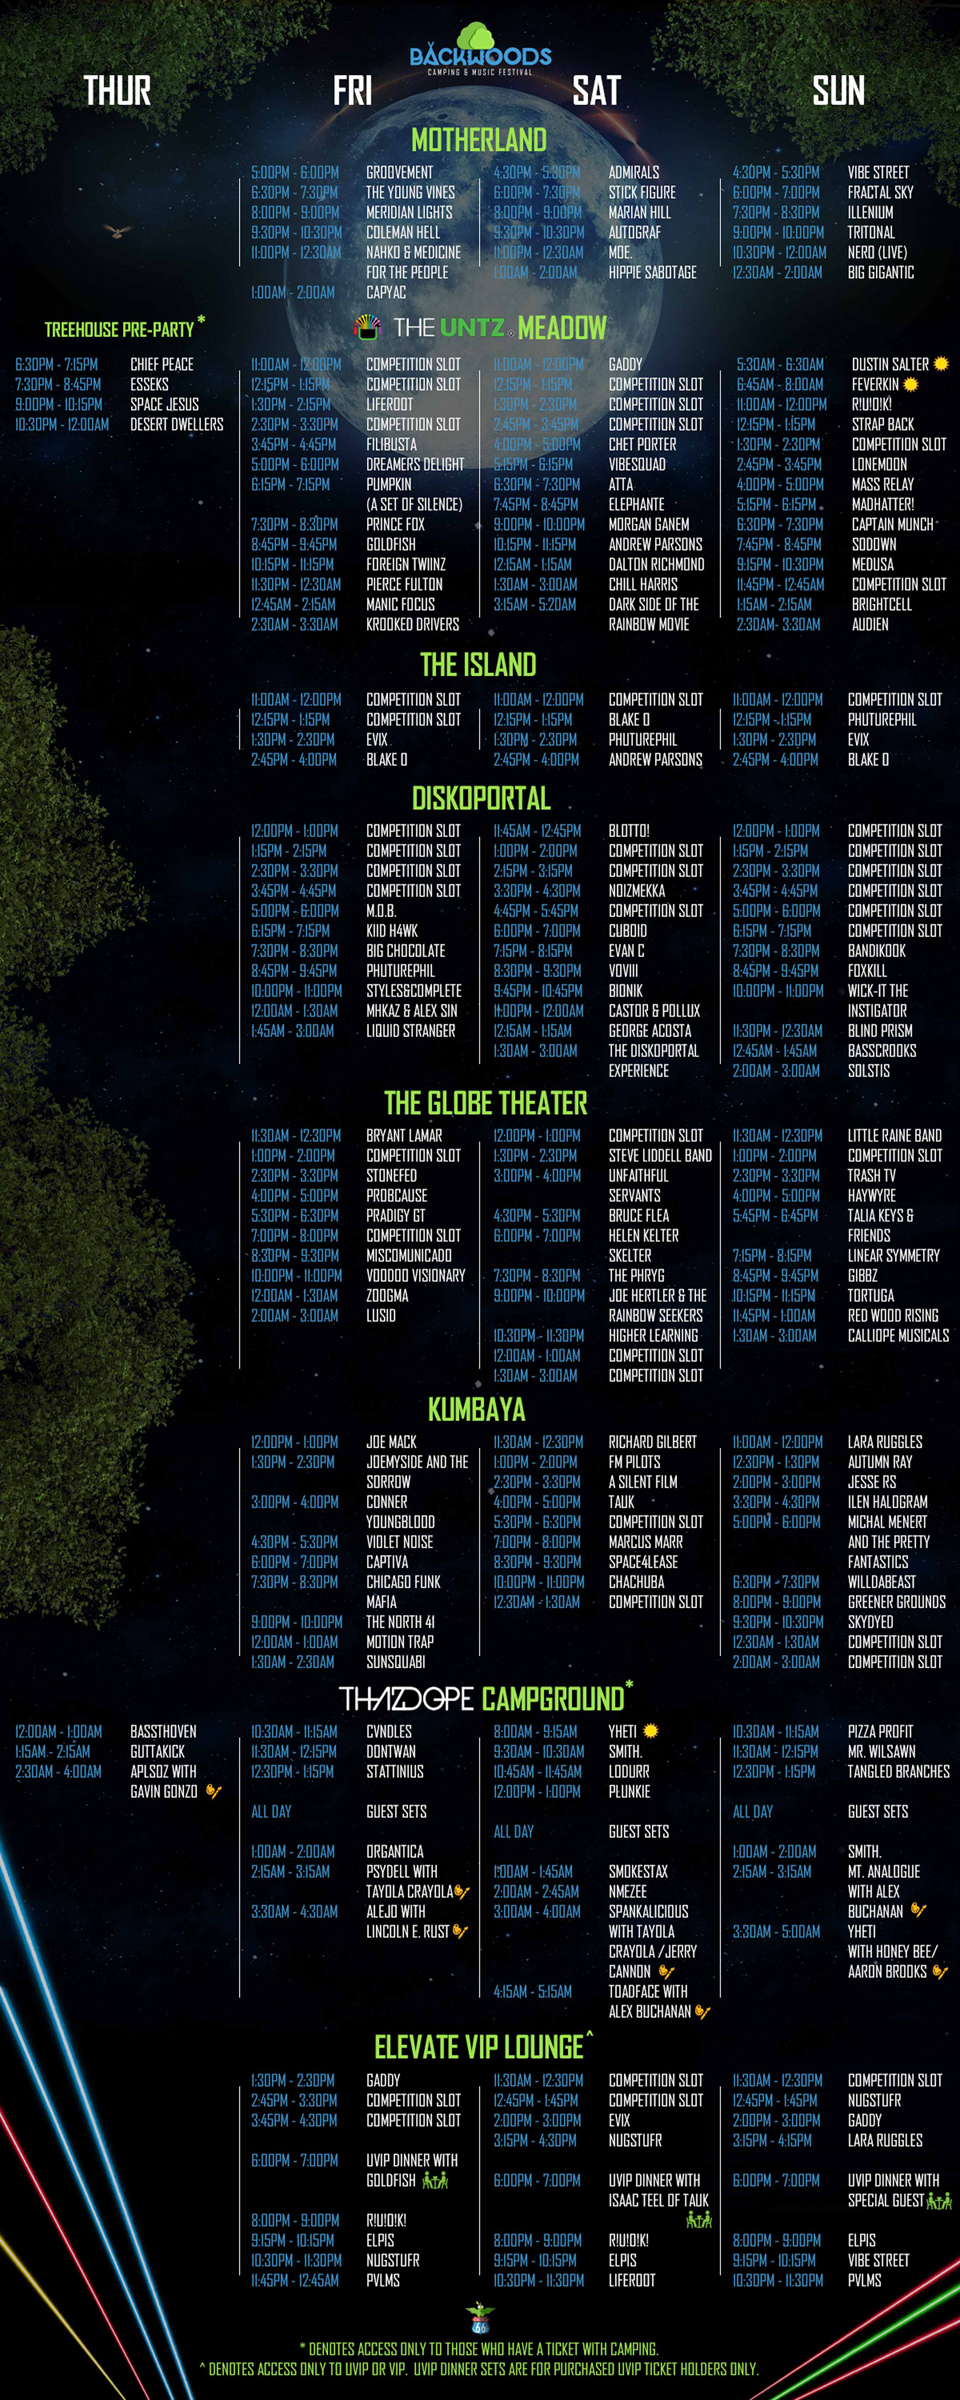 Backwoods 2016 schedule